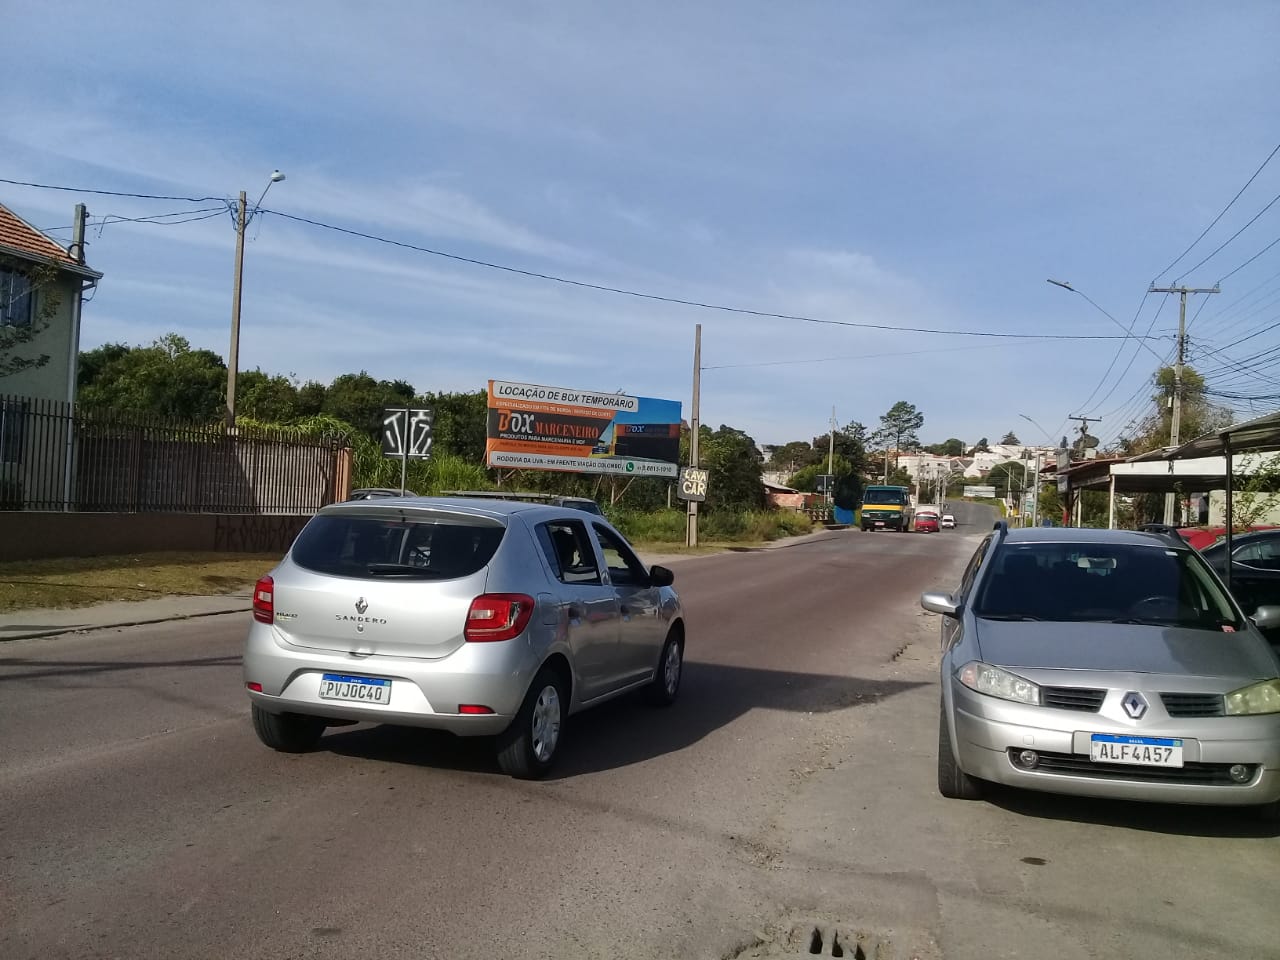 Estrada das Olarias após Conglomerado Banestado - quadro 1 - Menezes.jpg